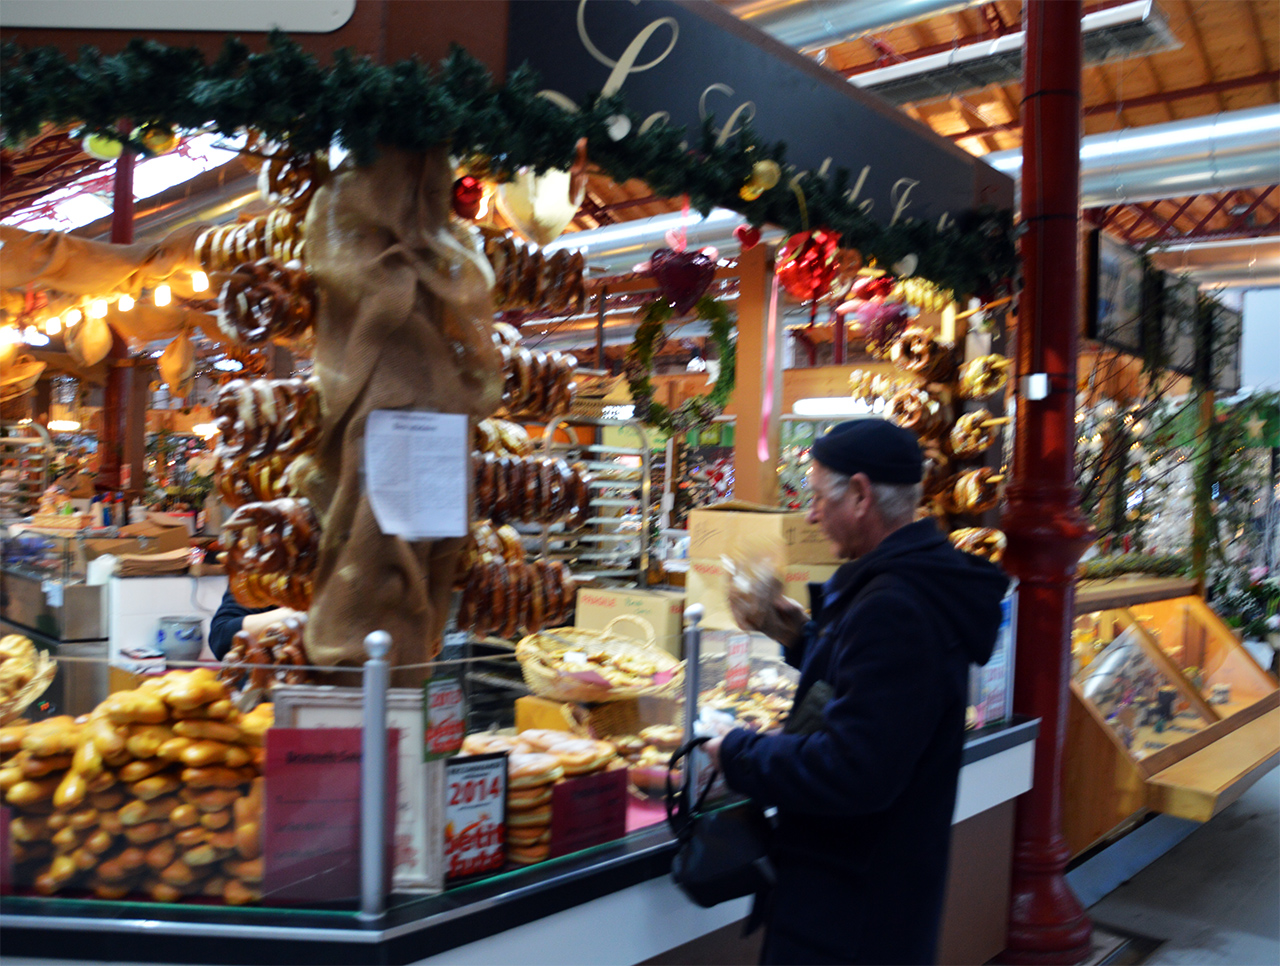  독일 문화의 영향을 받은 알자스 지역에서는 독일의 대표 빵인 브레첼이 주식이다.